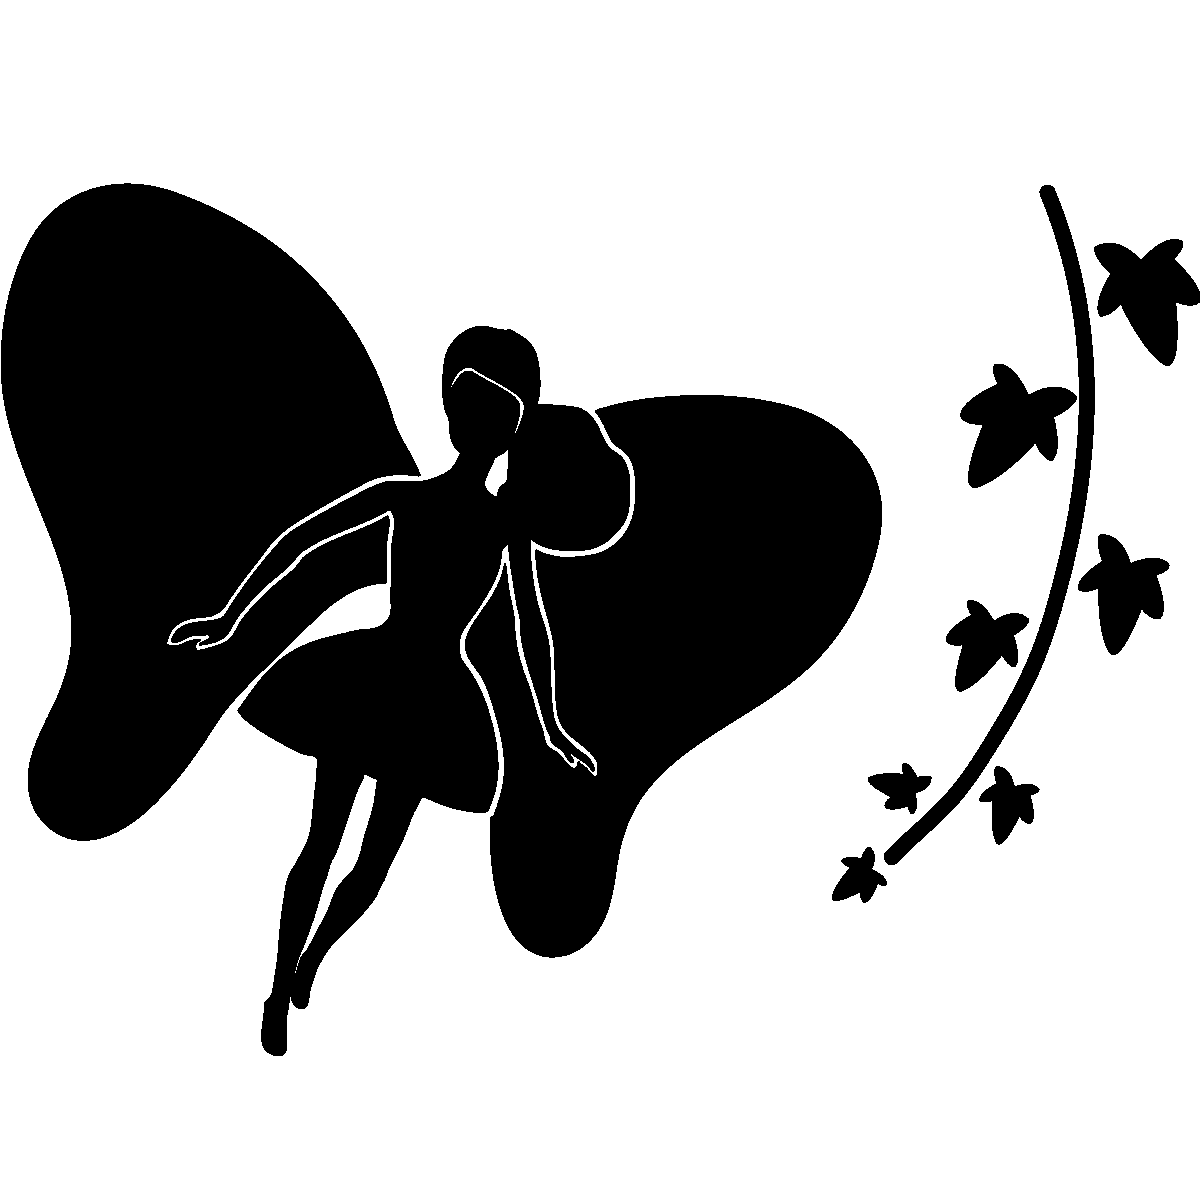 Hatchimals pixies crystal flyers - 6059634 - fée volante magique avec socle  violette - poupée qui vole jouet enfant - La Poste